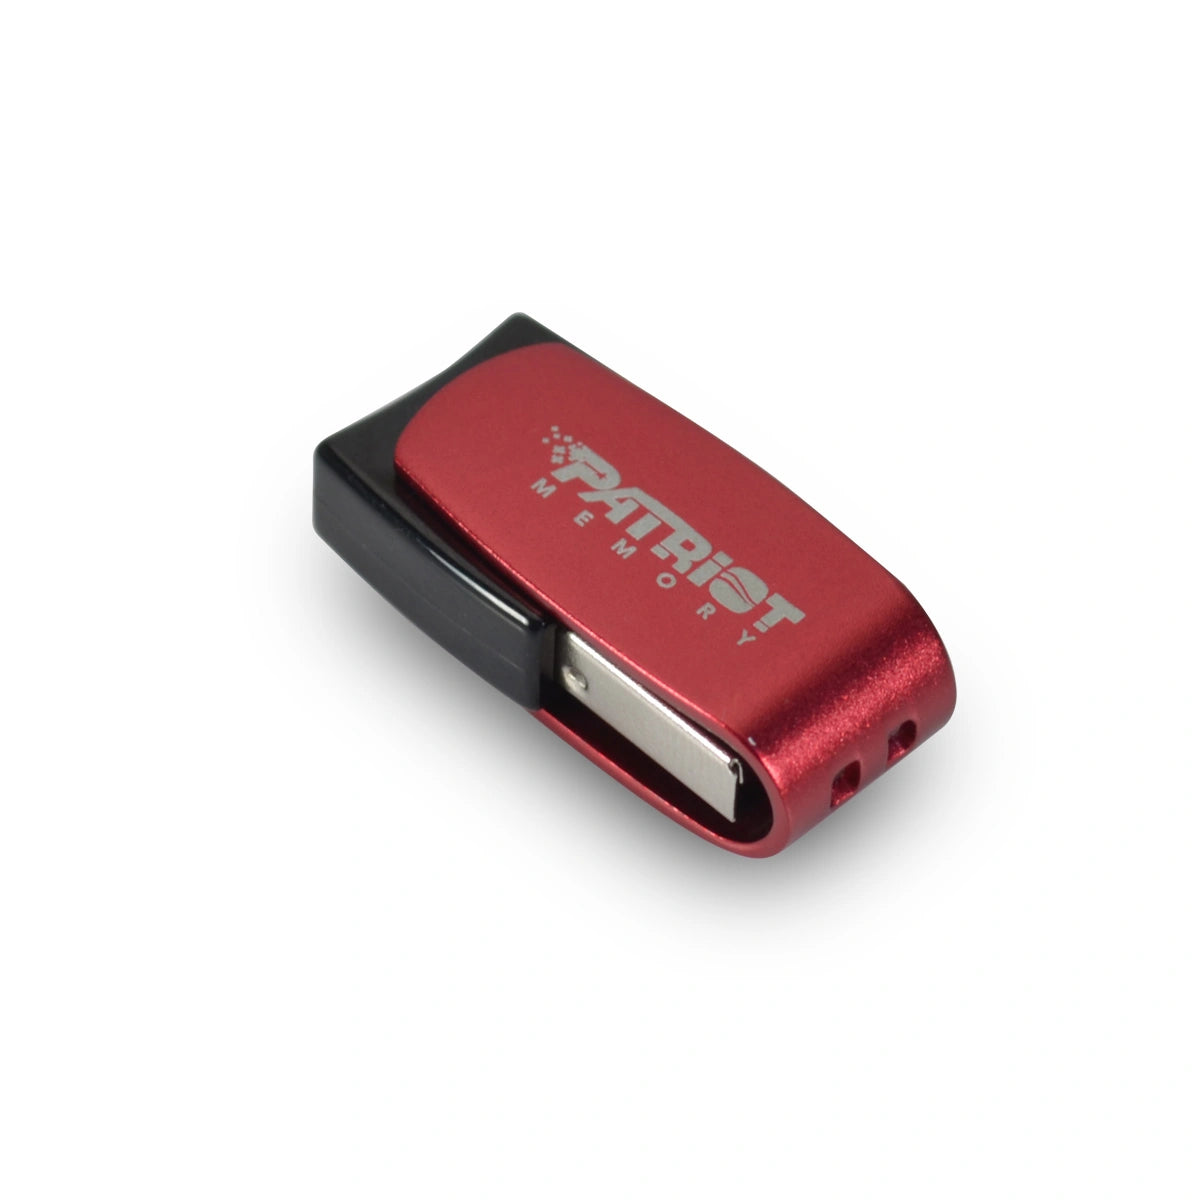 Patriot Memory - Axle 32Gb - USB Key